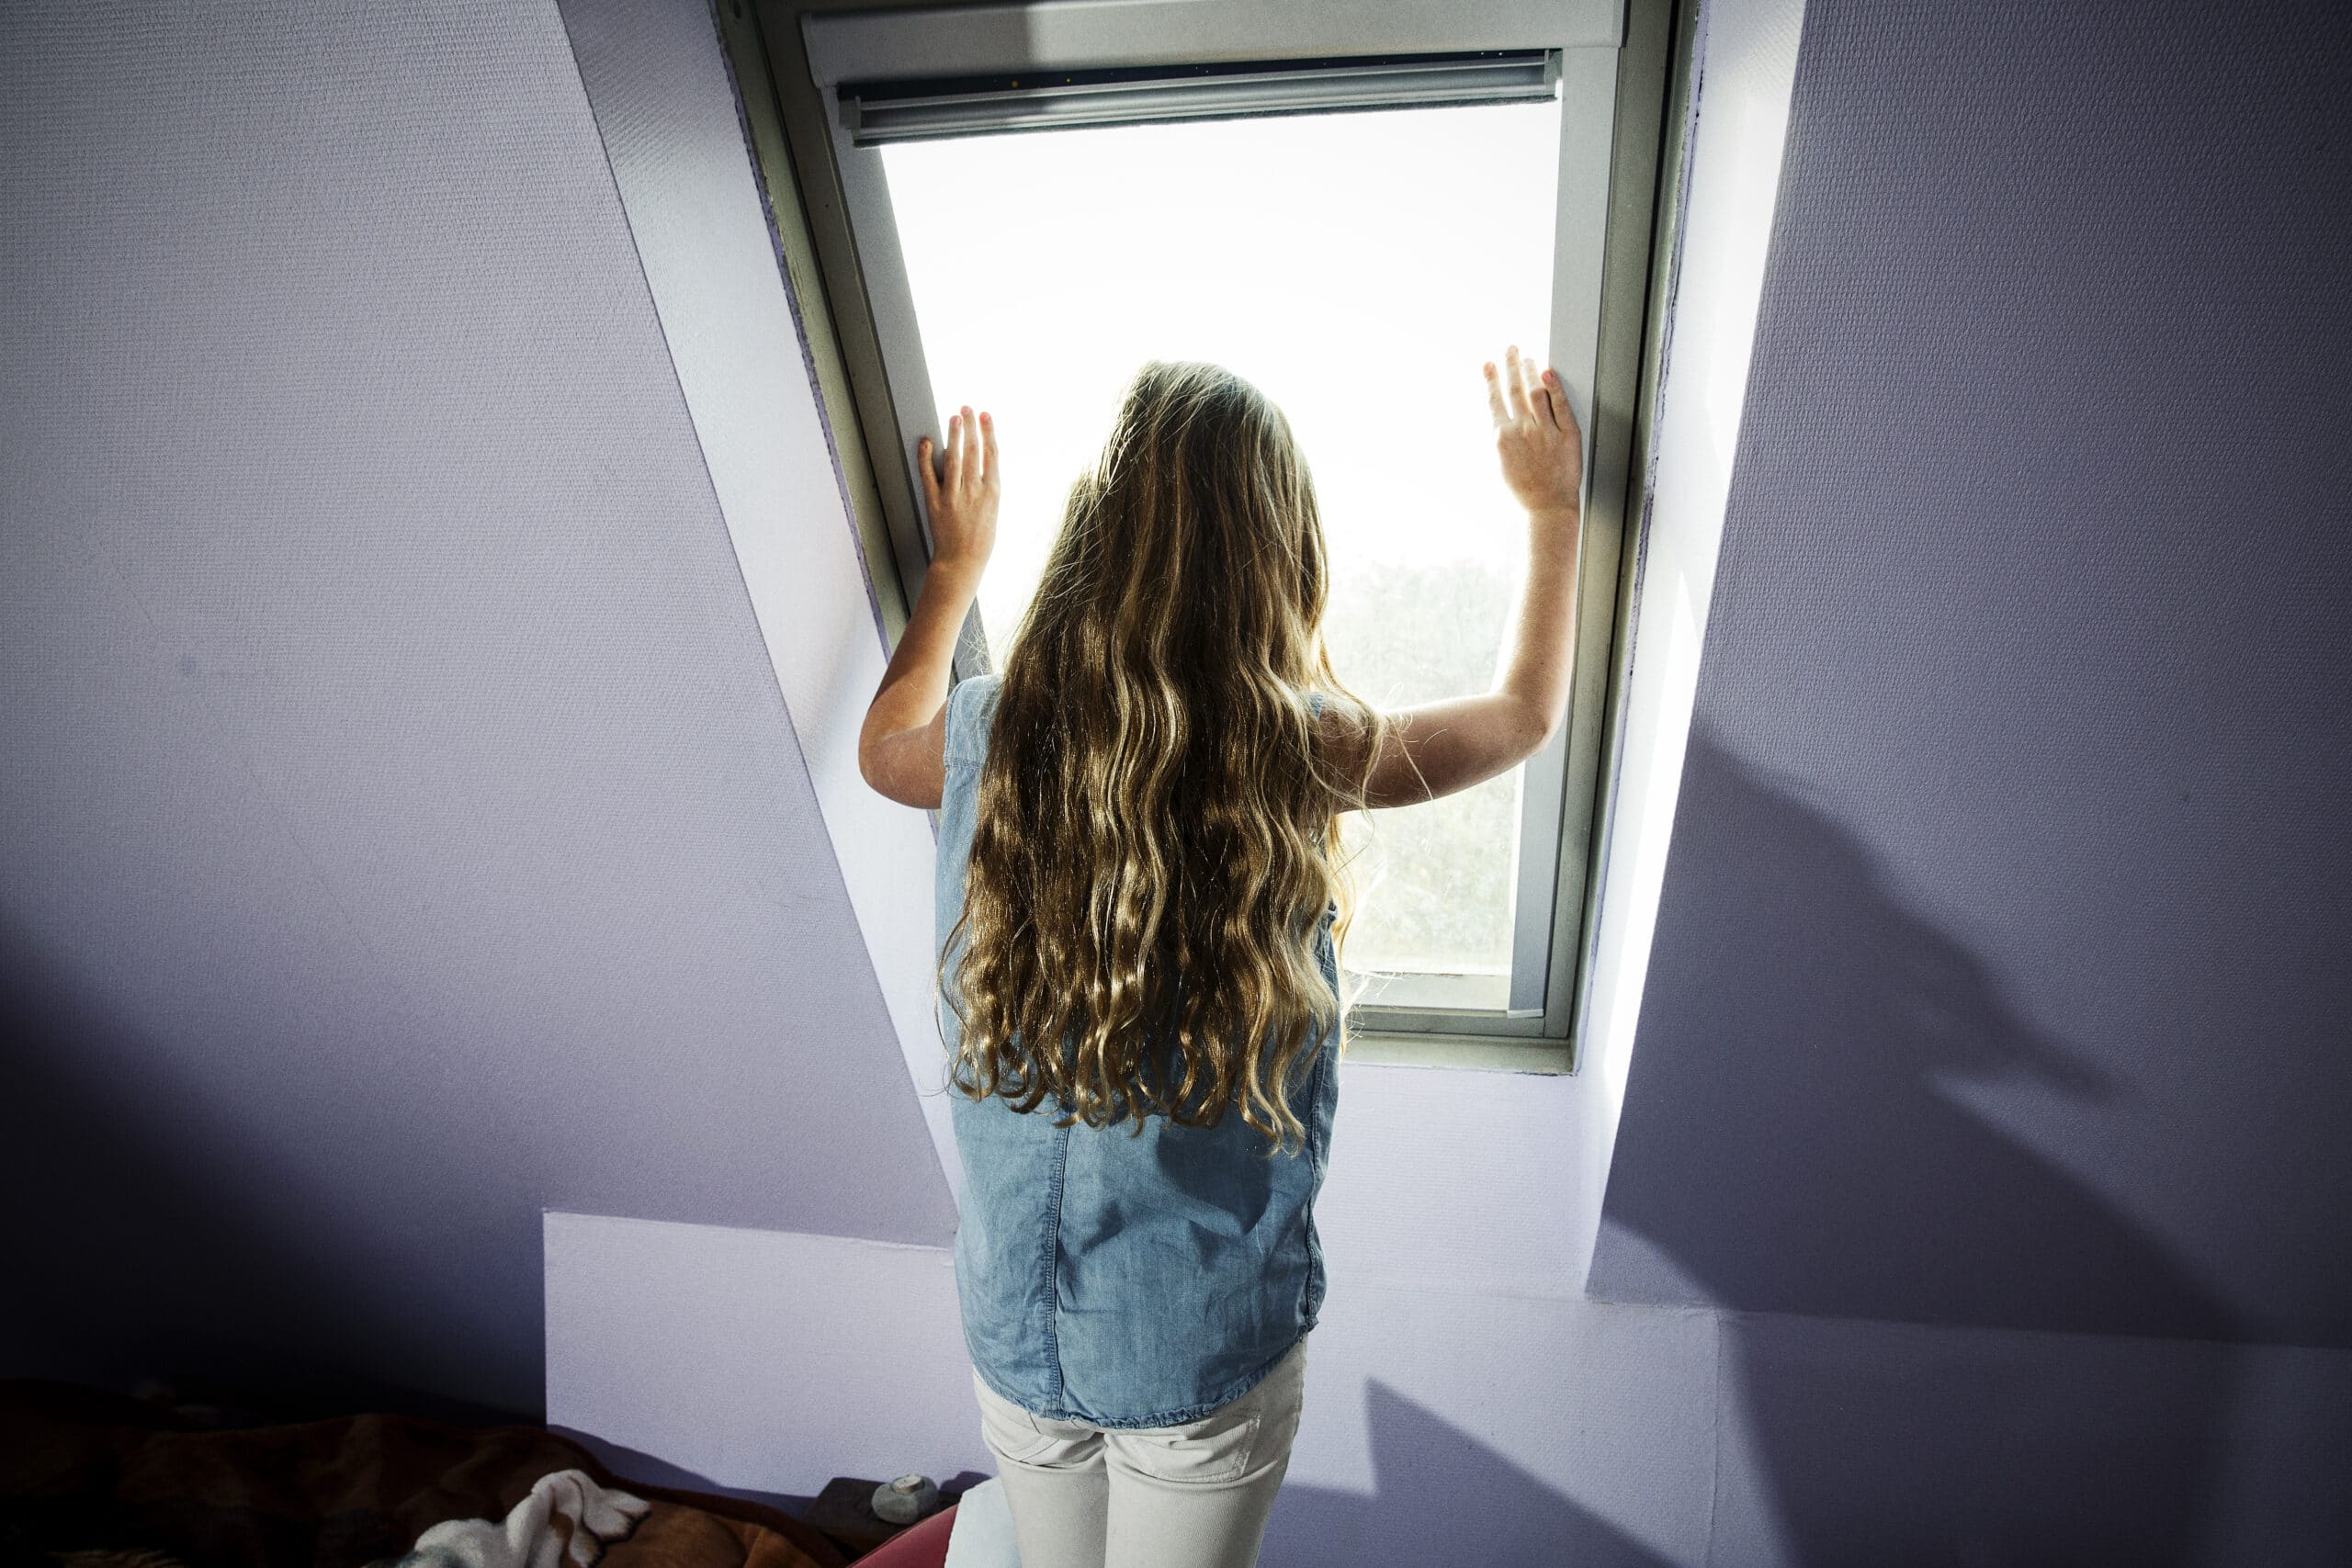 En jente med langt krøllete hår står og kikker ut av et loftsvindu